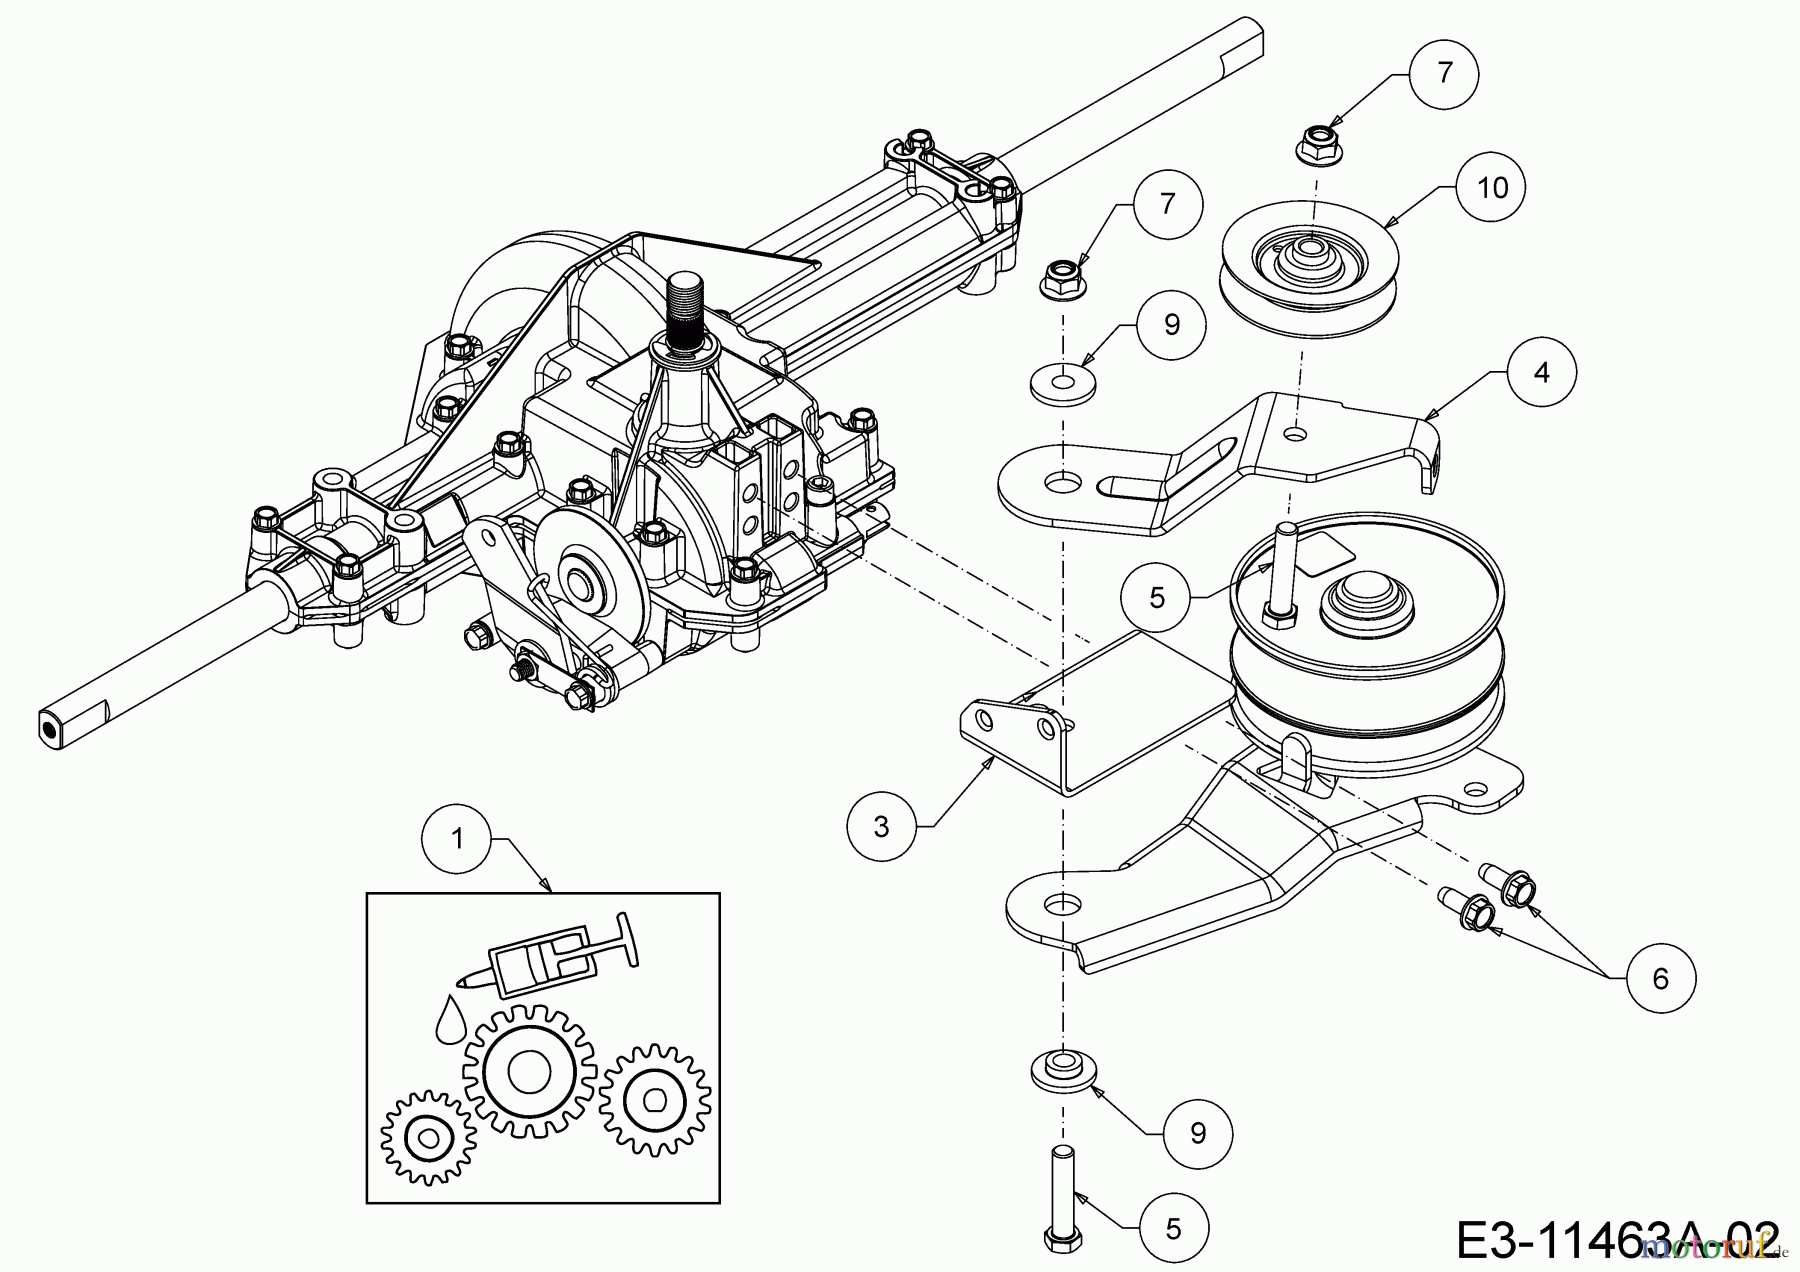  Mastercut Lawn tractors Mastercut 96 13A7765F659  (2019) Idle pullie gearbox